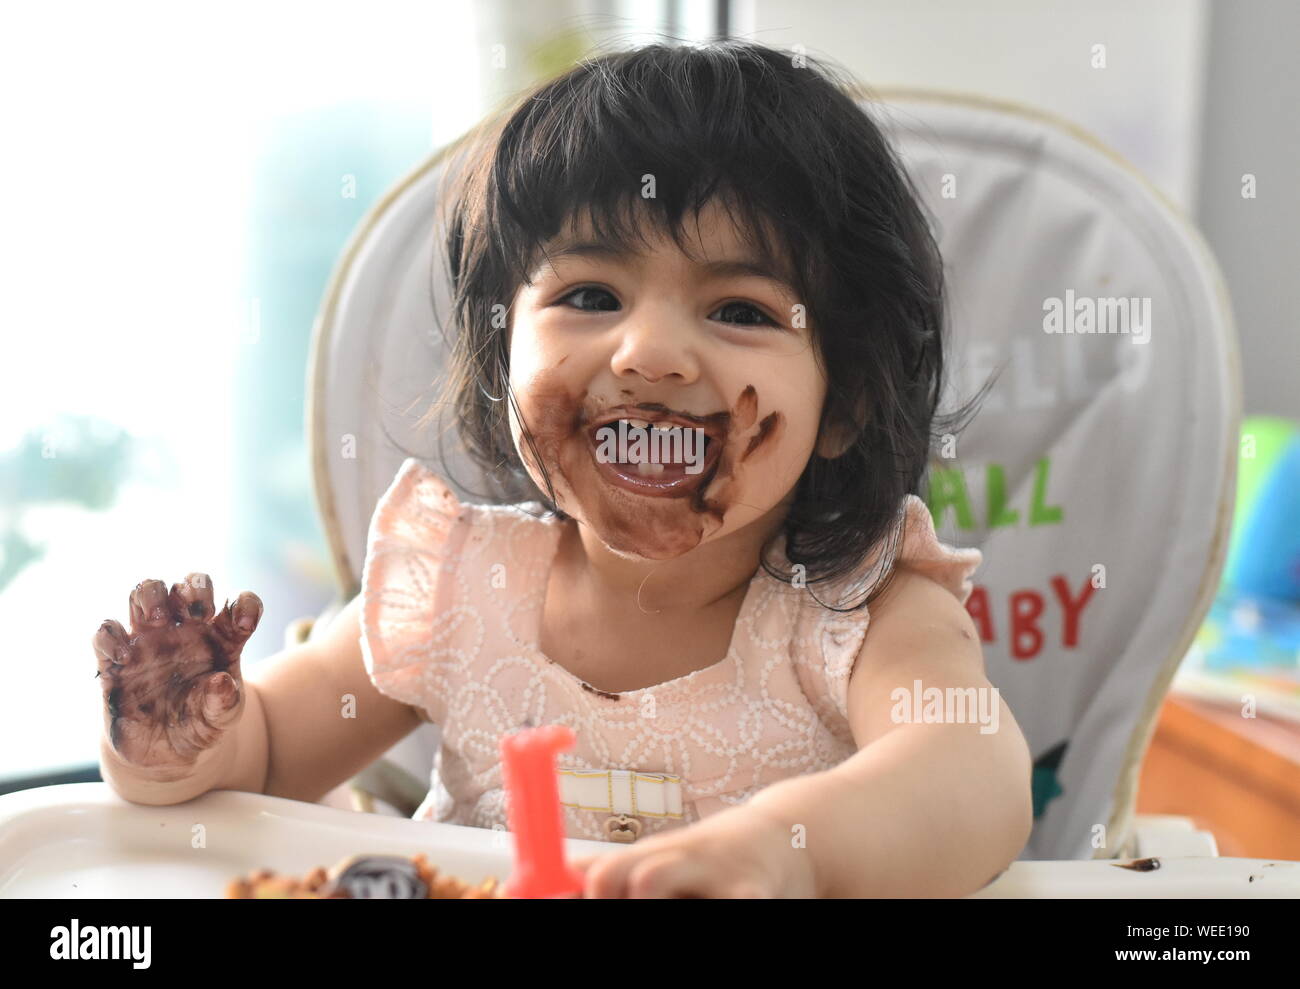 Carino Happy Baby girl disordinato compleanno di mangiare una torta al cioccolato Foto Stock